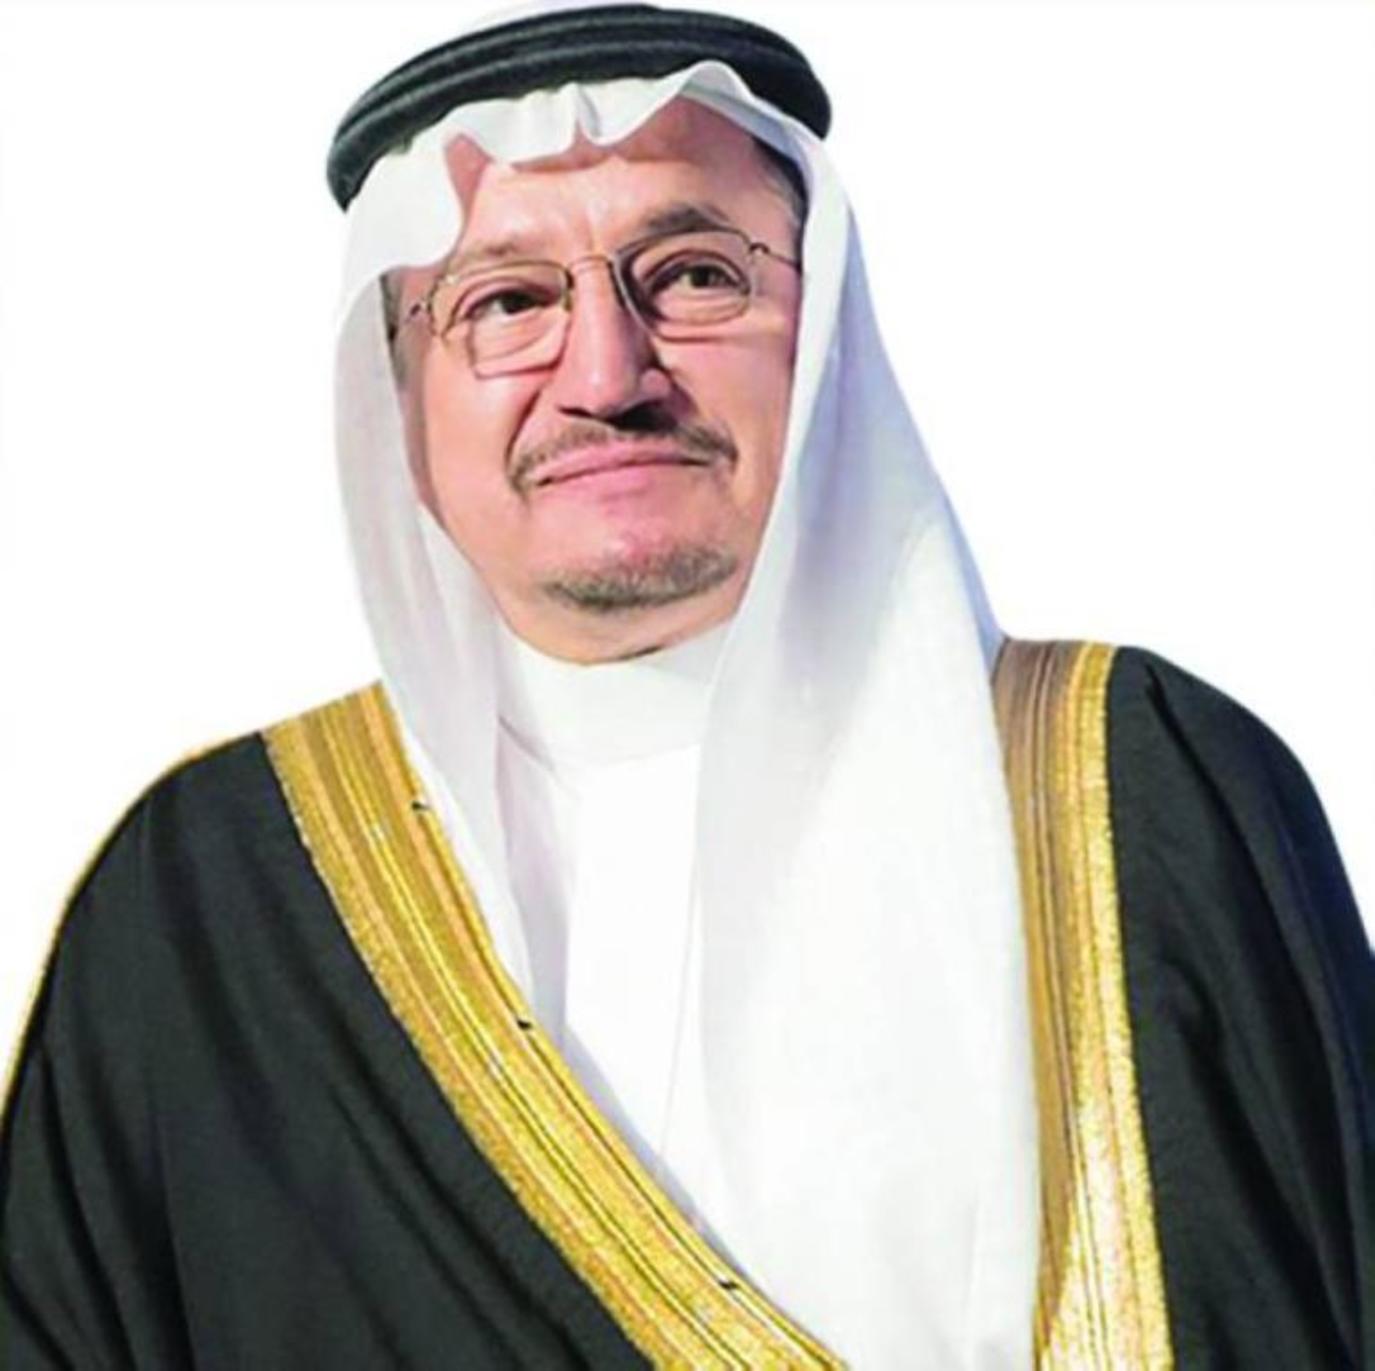 وزير التعليم السعودي